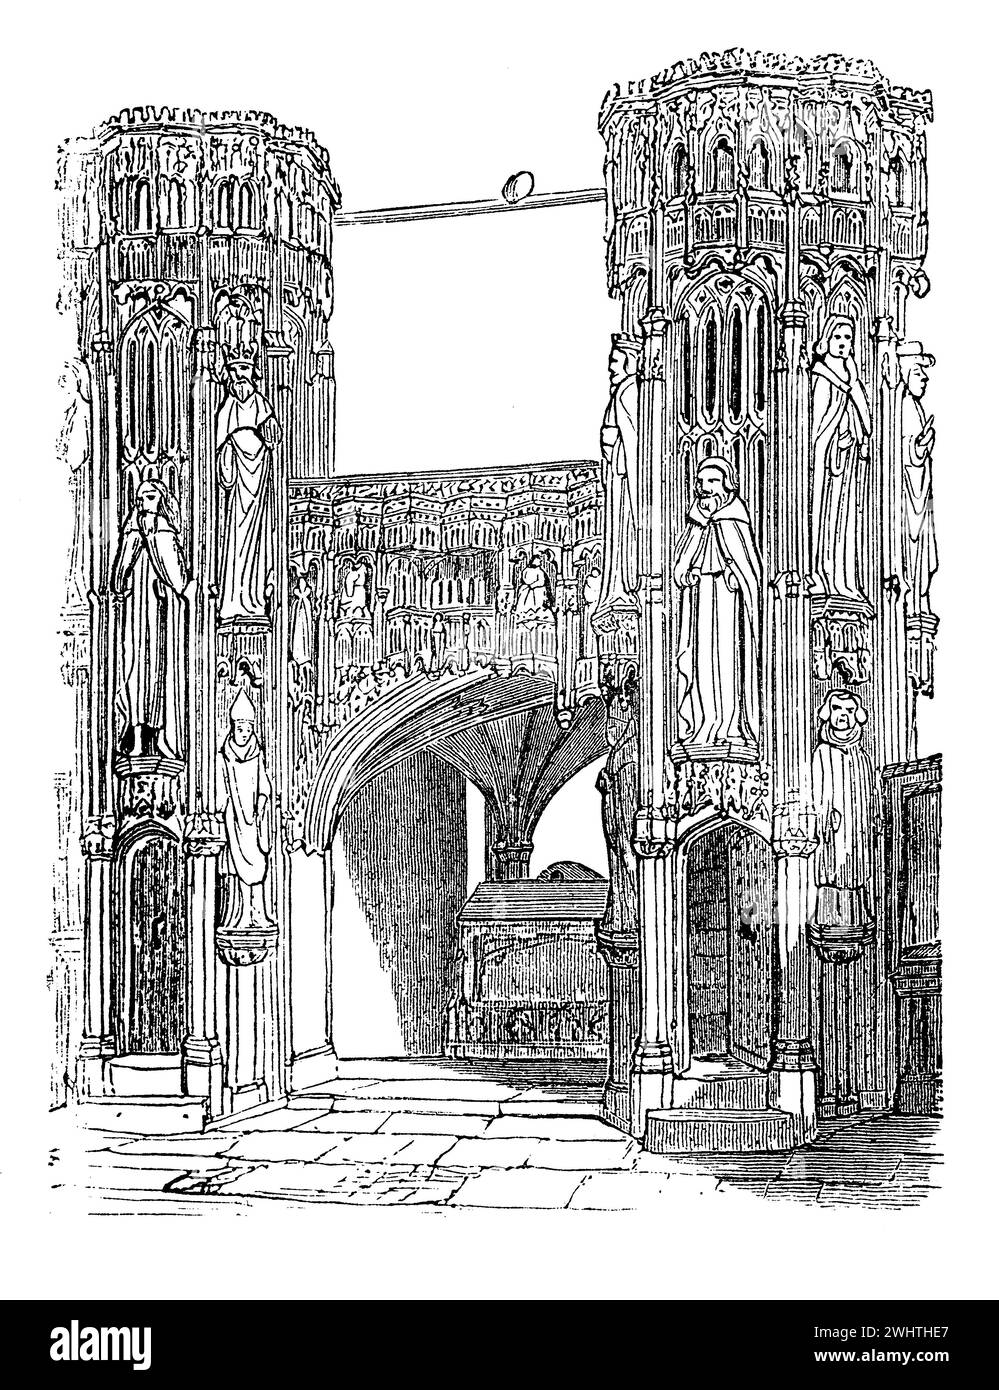 Canal de Henry V en la Abadía de Westminster, Londres. Ilustración en blanco y negro de la "vieja Inglaterra" publicada por James Sangster en 1860. Foto de stock